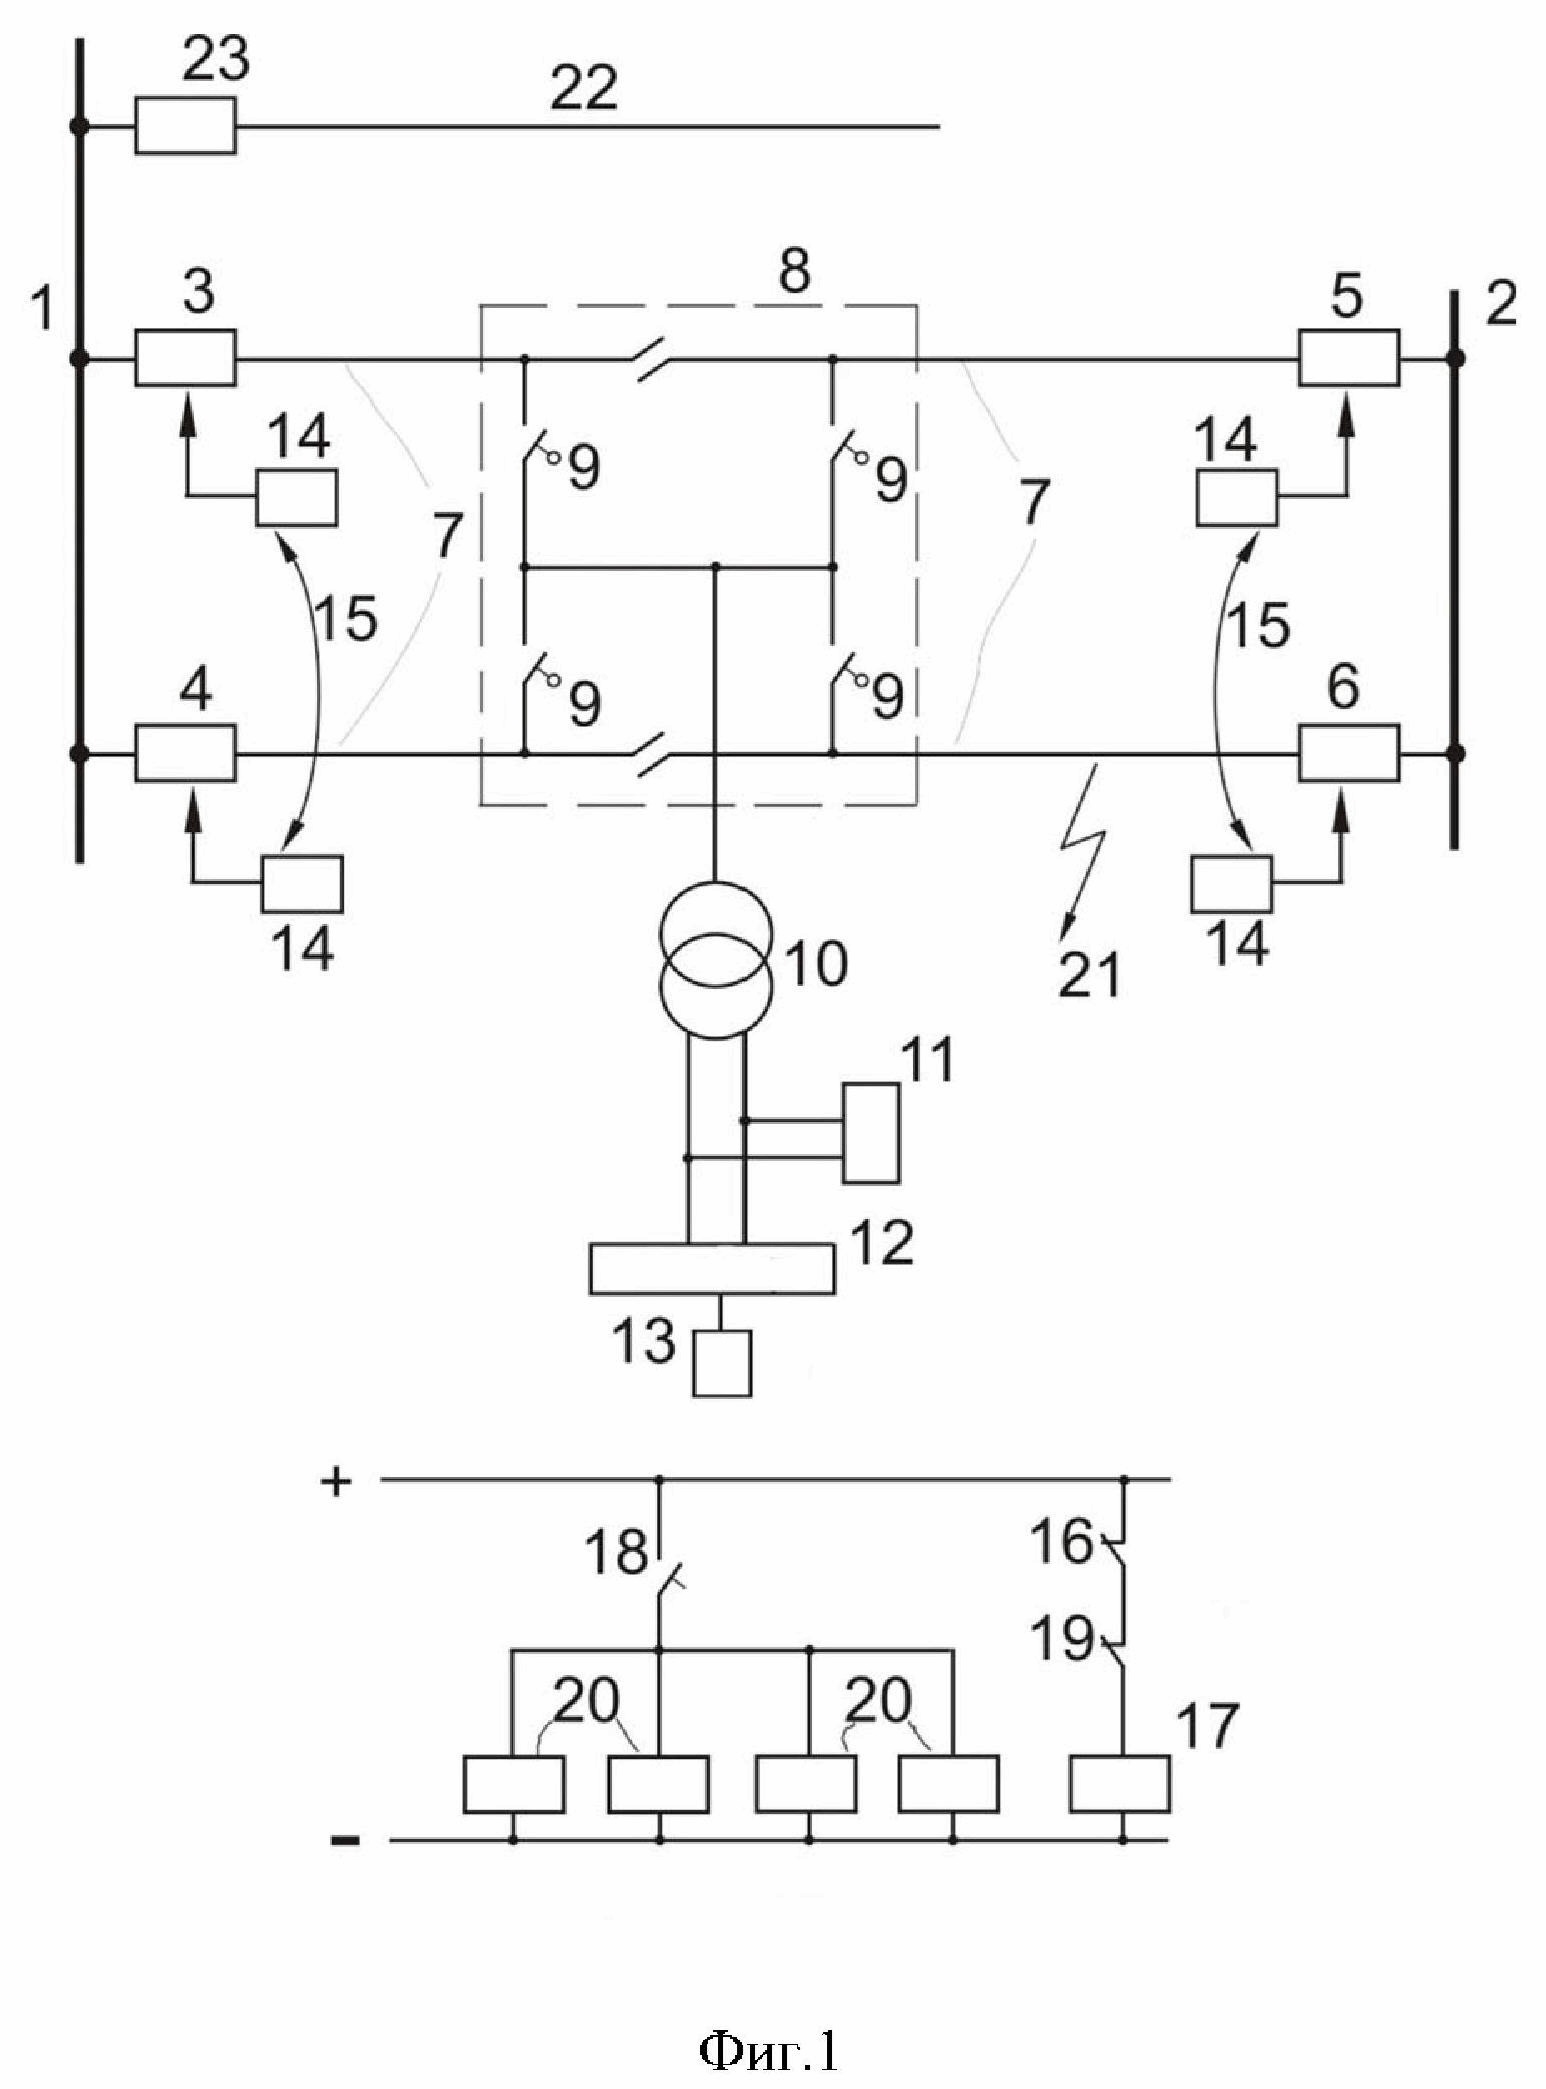 Способ автоматизации повторного включения (АПВ) выключателей двухпутного участка переменного тока тягового электроснабжения с постом секционирования на разъединителях